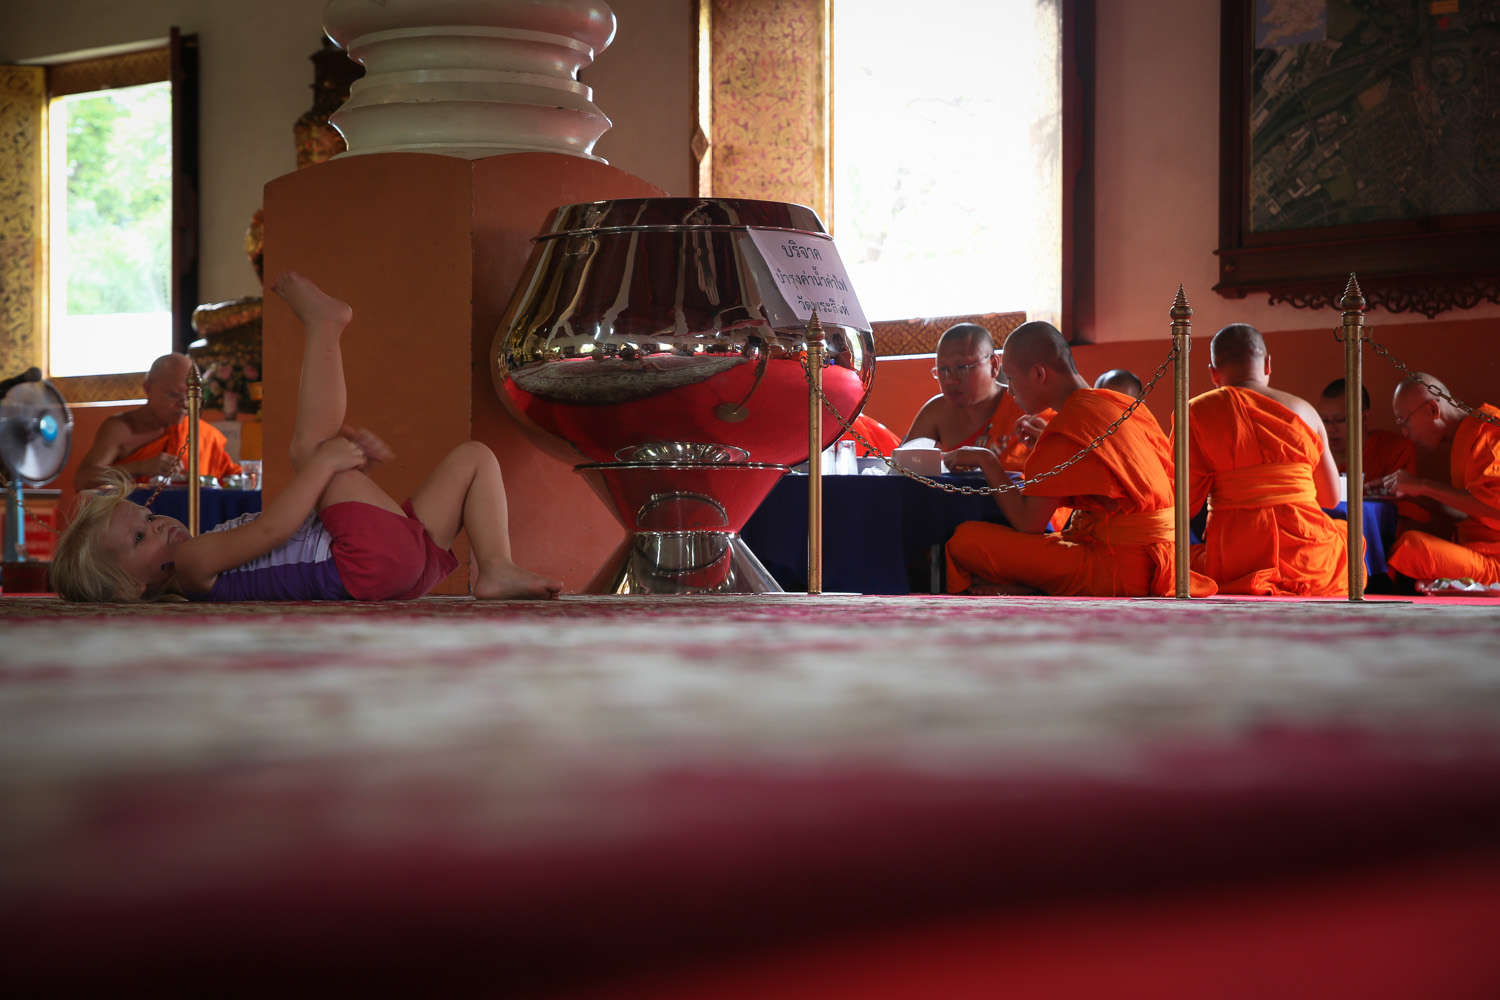 Wat Phra Singh2.jpg